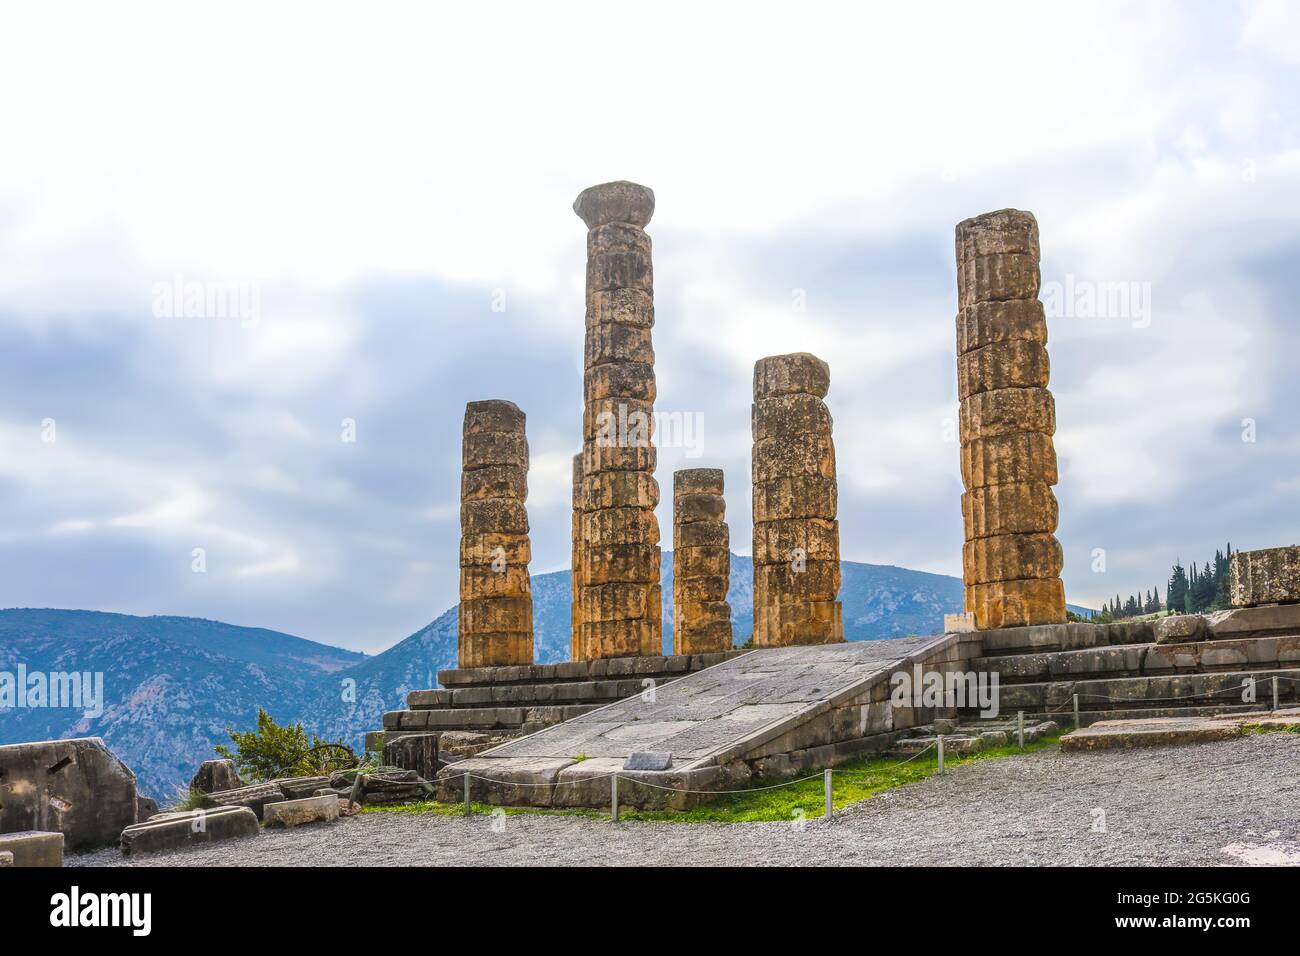 Les colonnes reconstruites du Temple d'Apollon à Delphes Grèce surplombent  la vallée avec des montagnes lointains par temps brumeux Photo Stock - Alamy